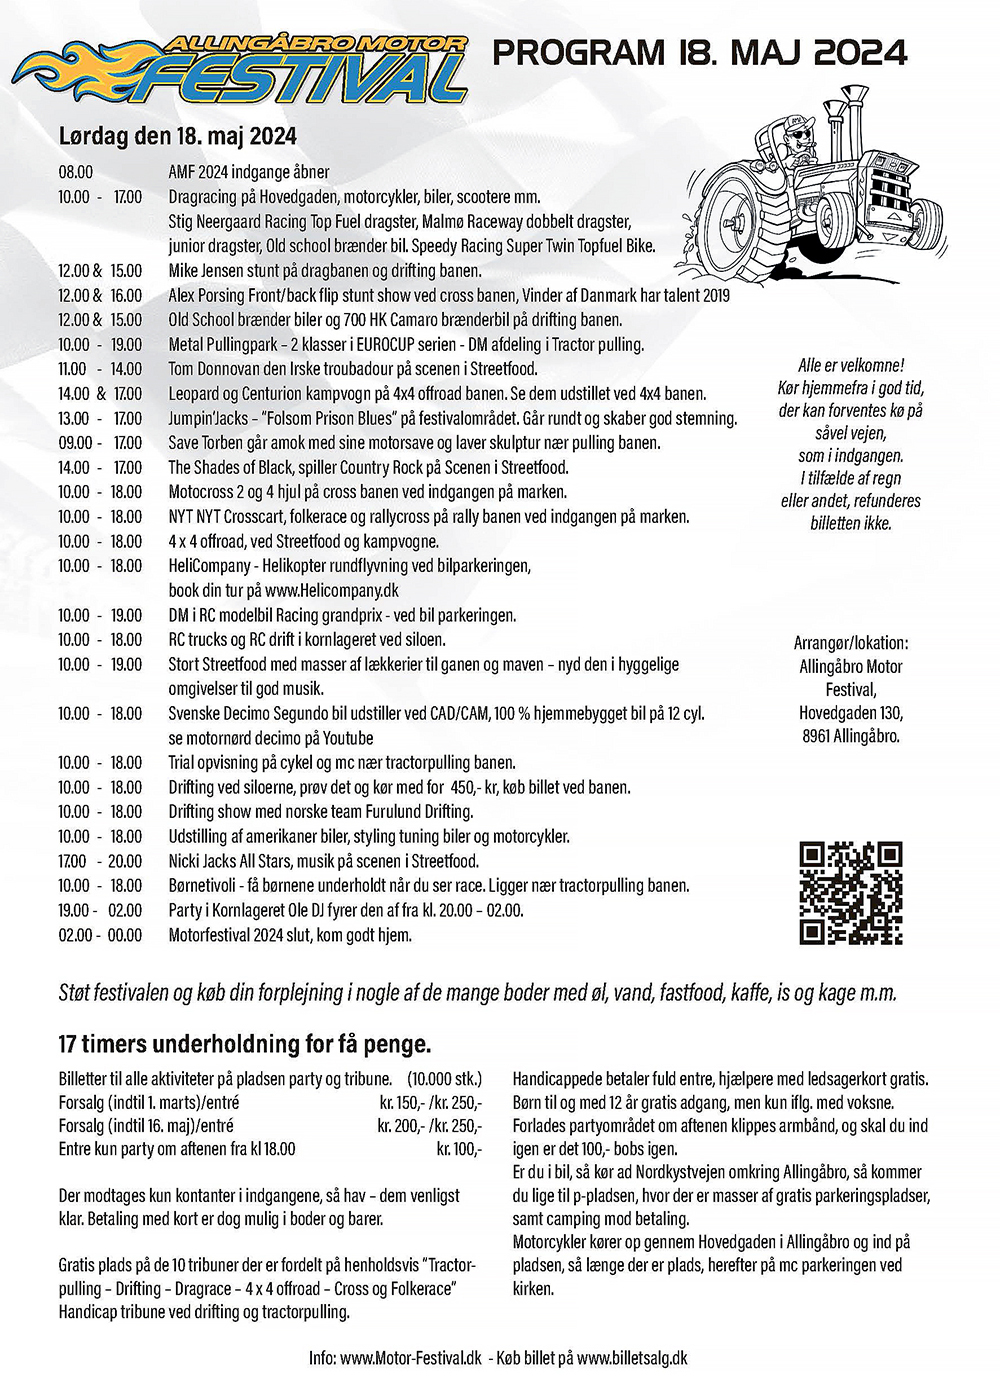 Program for Allingåbro Motor Festival 2024